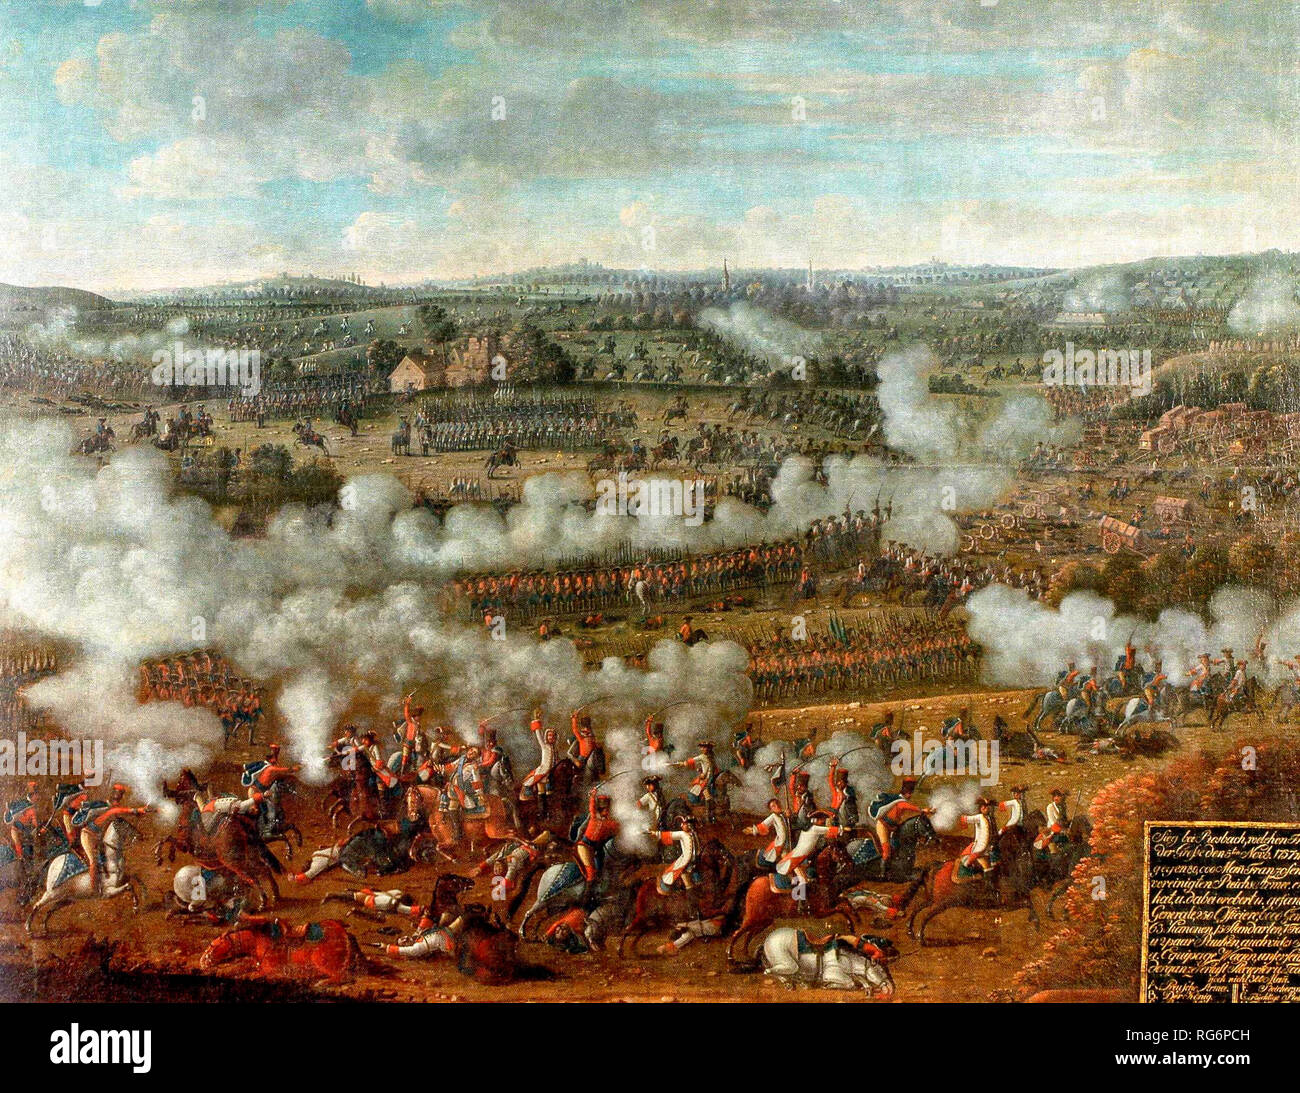 Die Schlacht von Rossbach - Soldaten in die Schlacht Linien gebildet. Puffs von Rauch aus musketen. Stockfoto